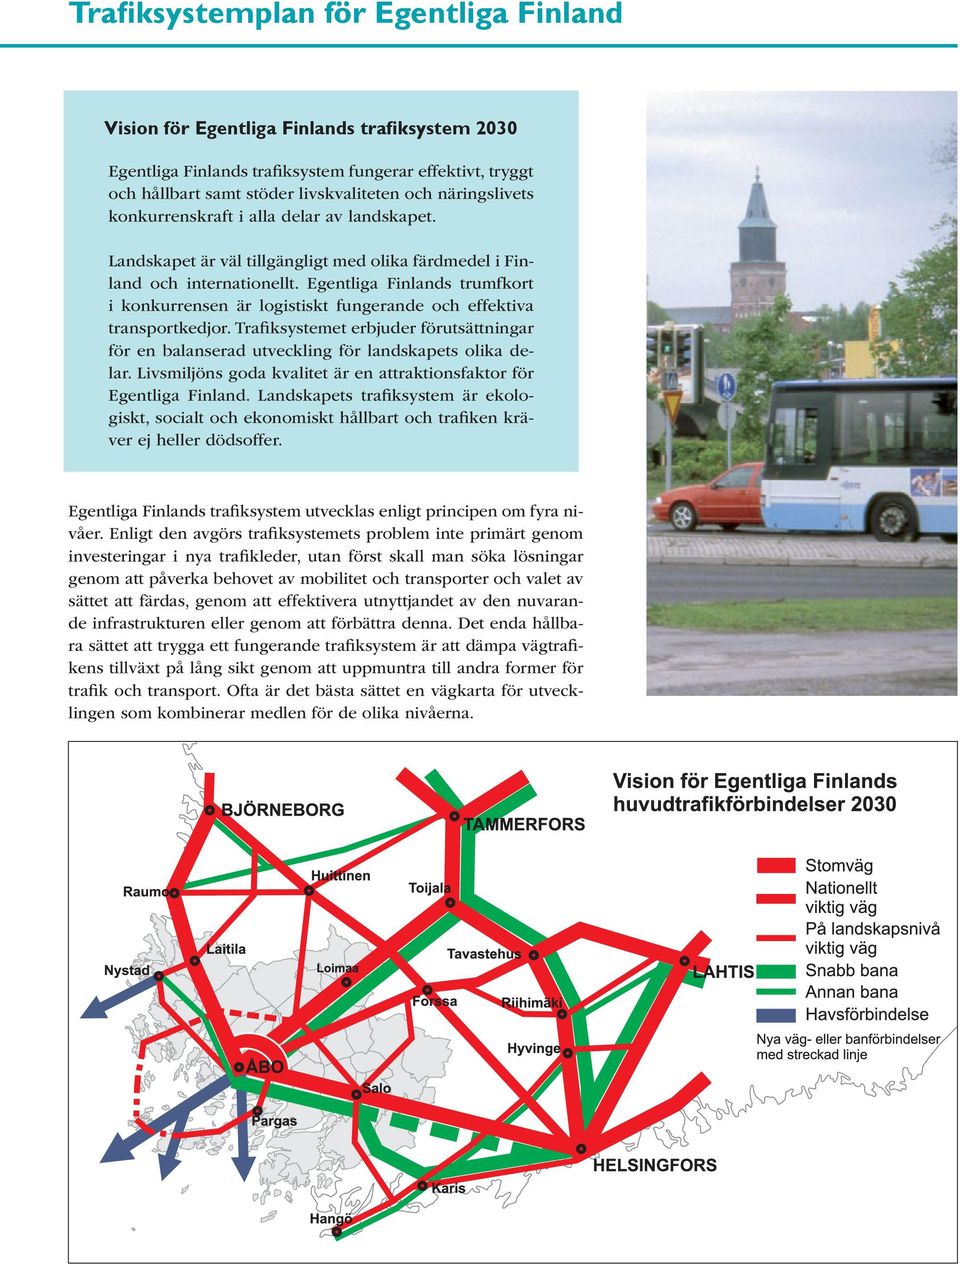 Egentliga Finlands trumfkort i konkurrensen är logistiskt fungerande och effektiva transportkedjor. Trafiksystemet erbjuder förutsättningar för en balanserad utveckling för landskapets olika delar.